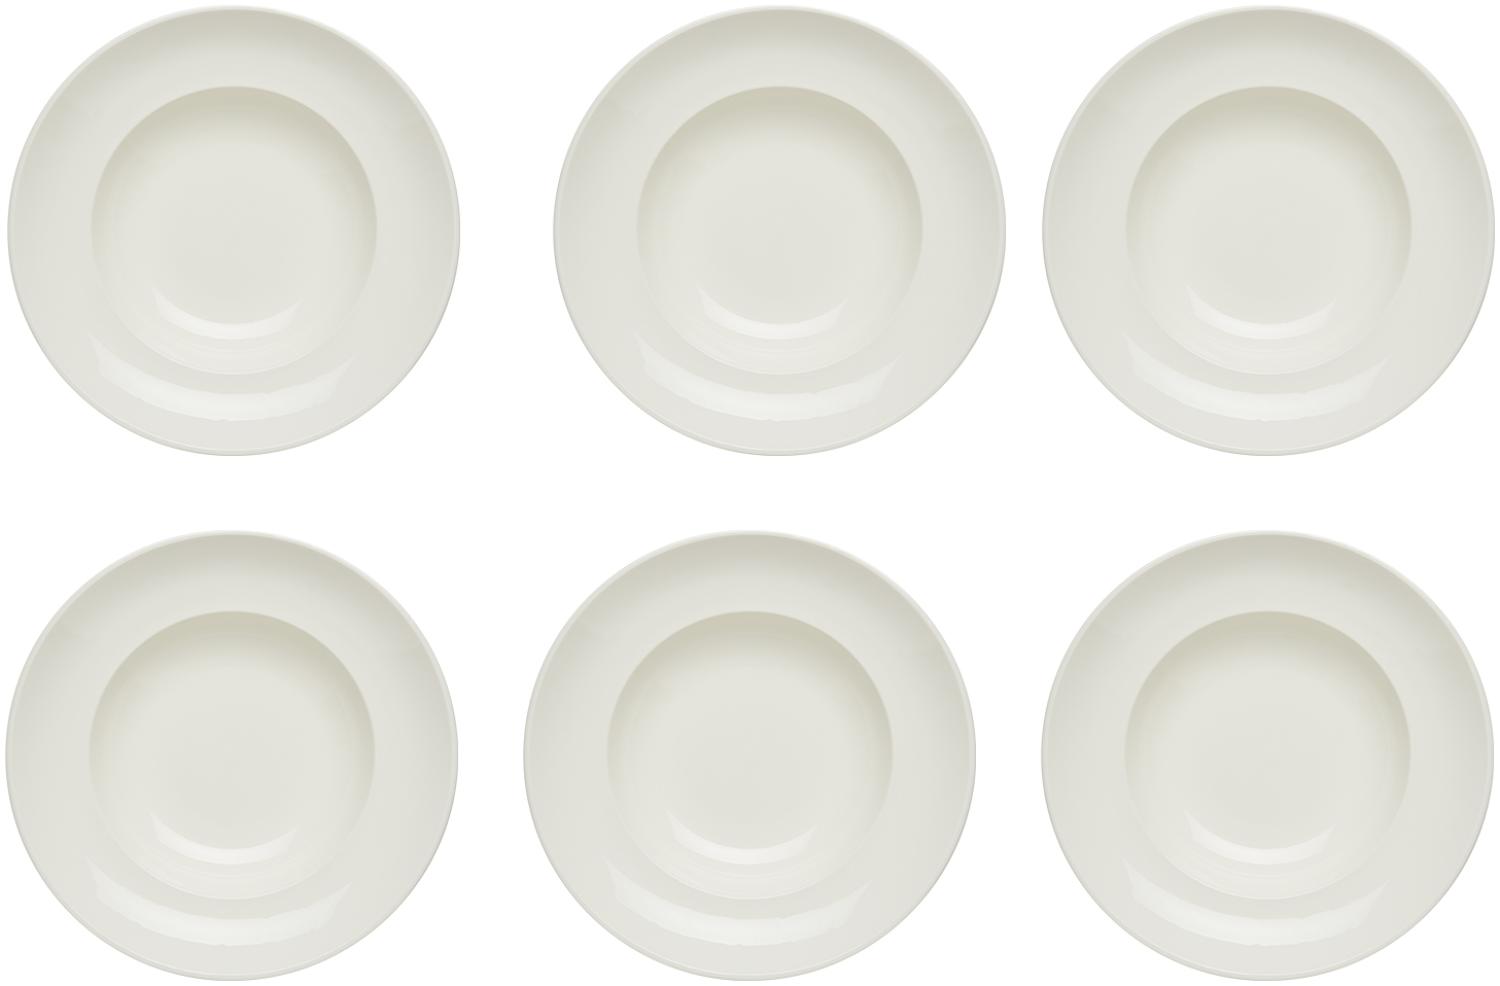 KHG 6er Set Pastateller, extra groß mit 30cm Durchmesser in weiß, perfekt für Gastro und Zuhause, hochwertiges Porzellan, Suppenteller, Salatteller, Spülmaschinengeeignet Bild 1